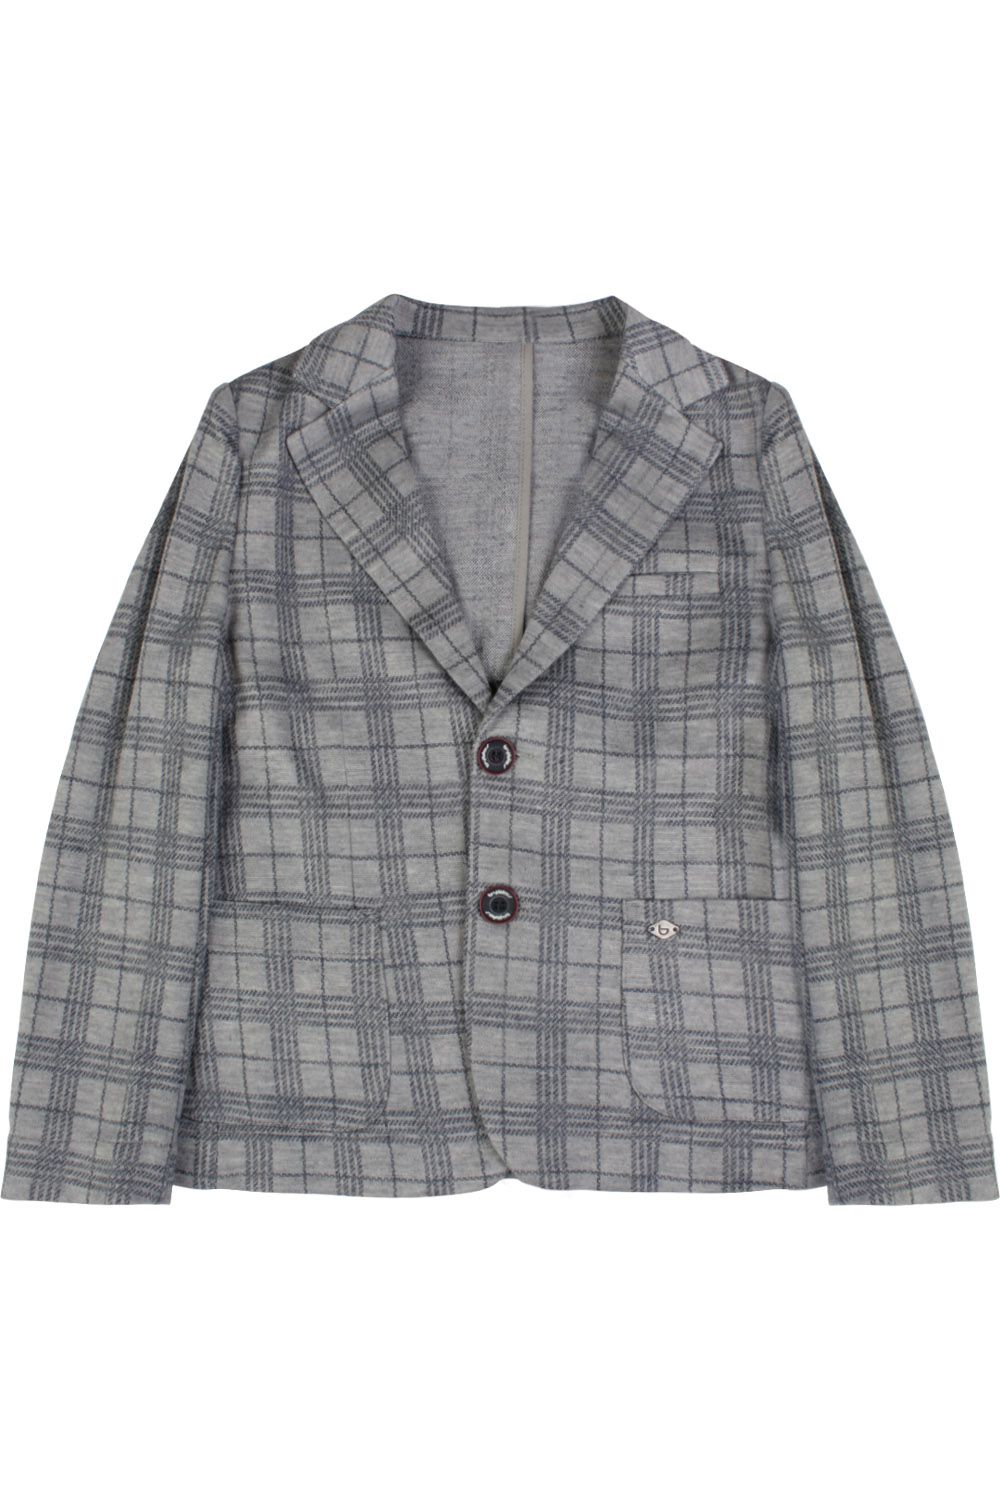 Пиджак Byblos, размер 140, цвет серый